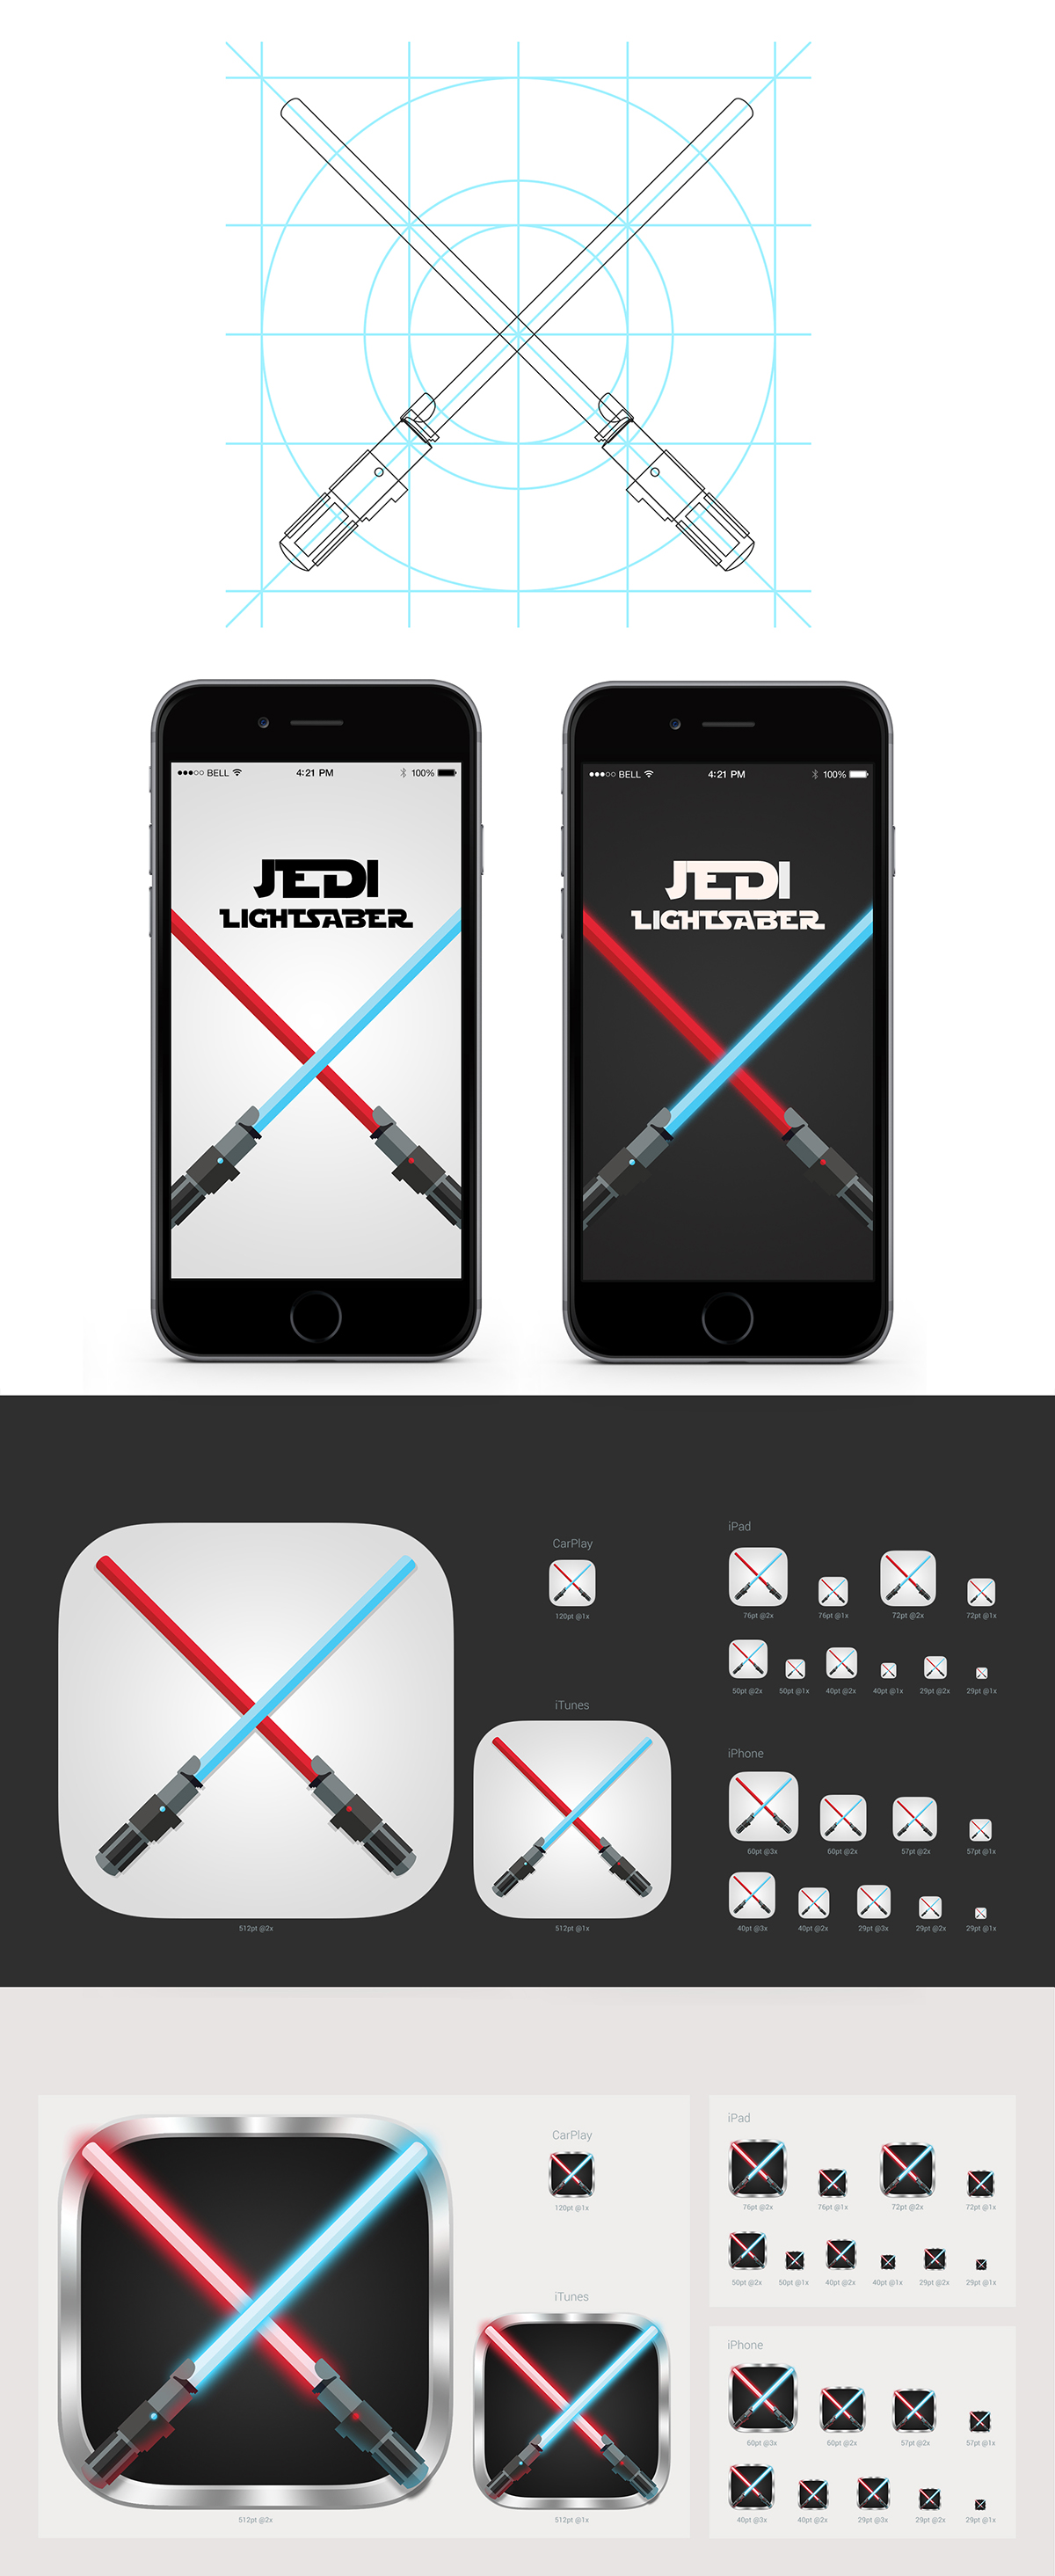 star Wars star wars app app icon lightsaber mobile Darkside